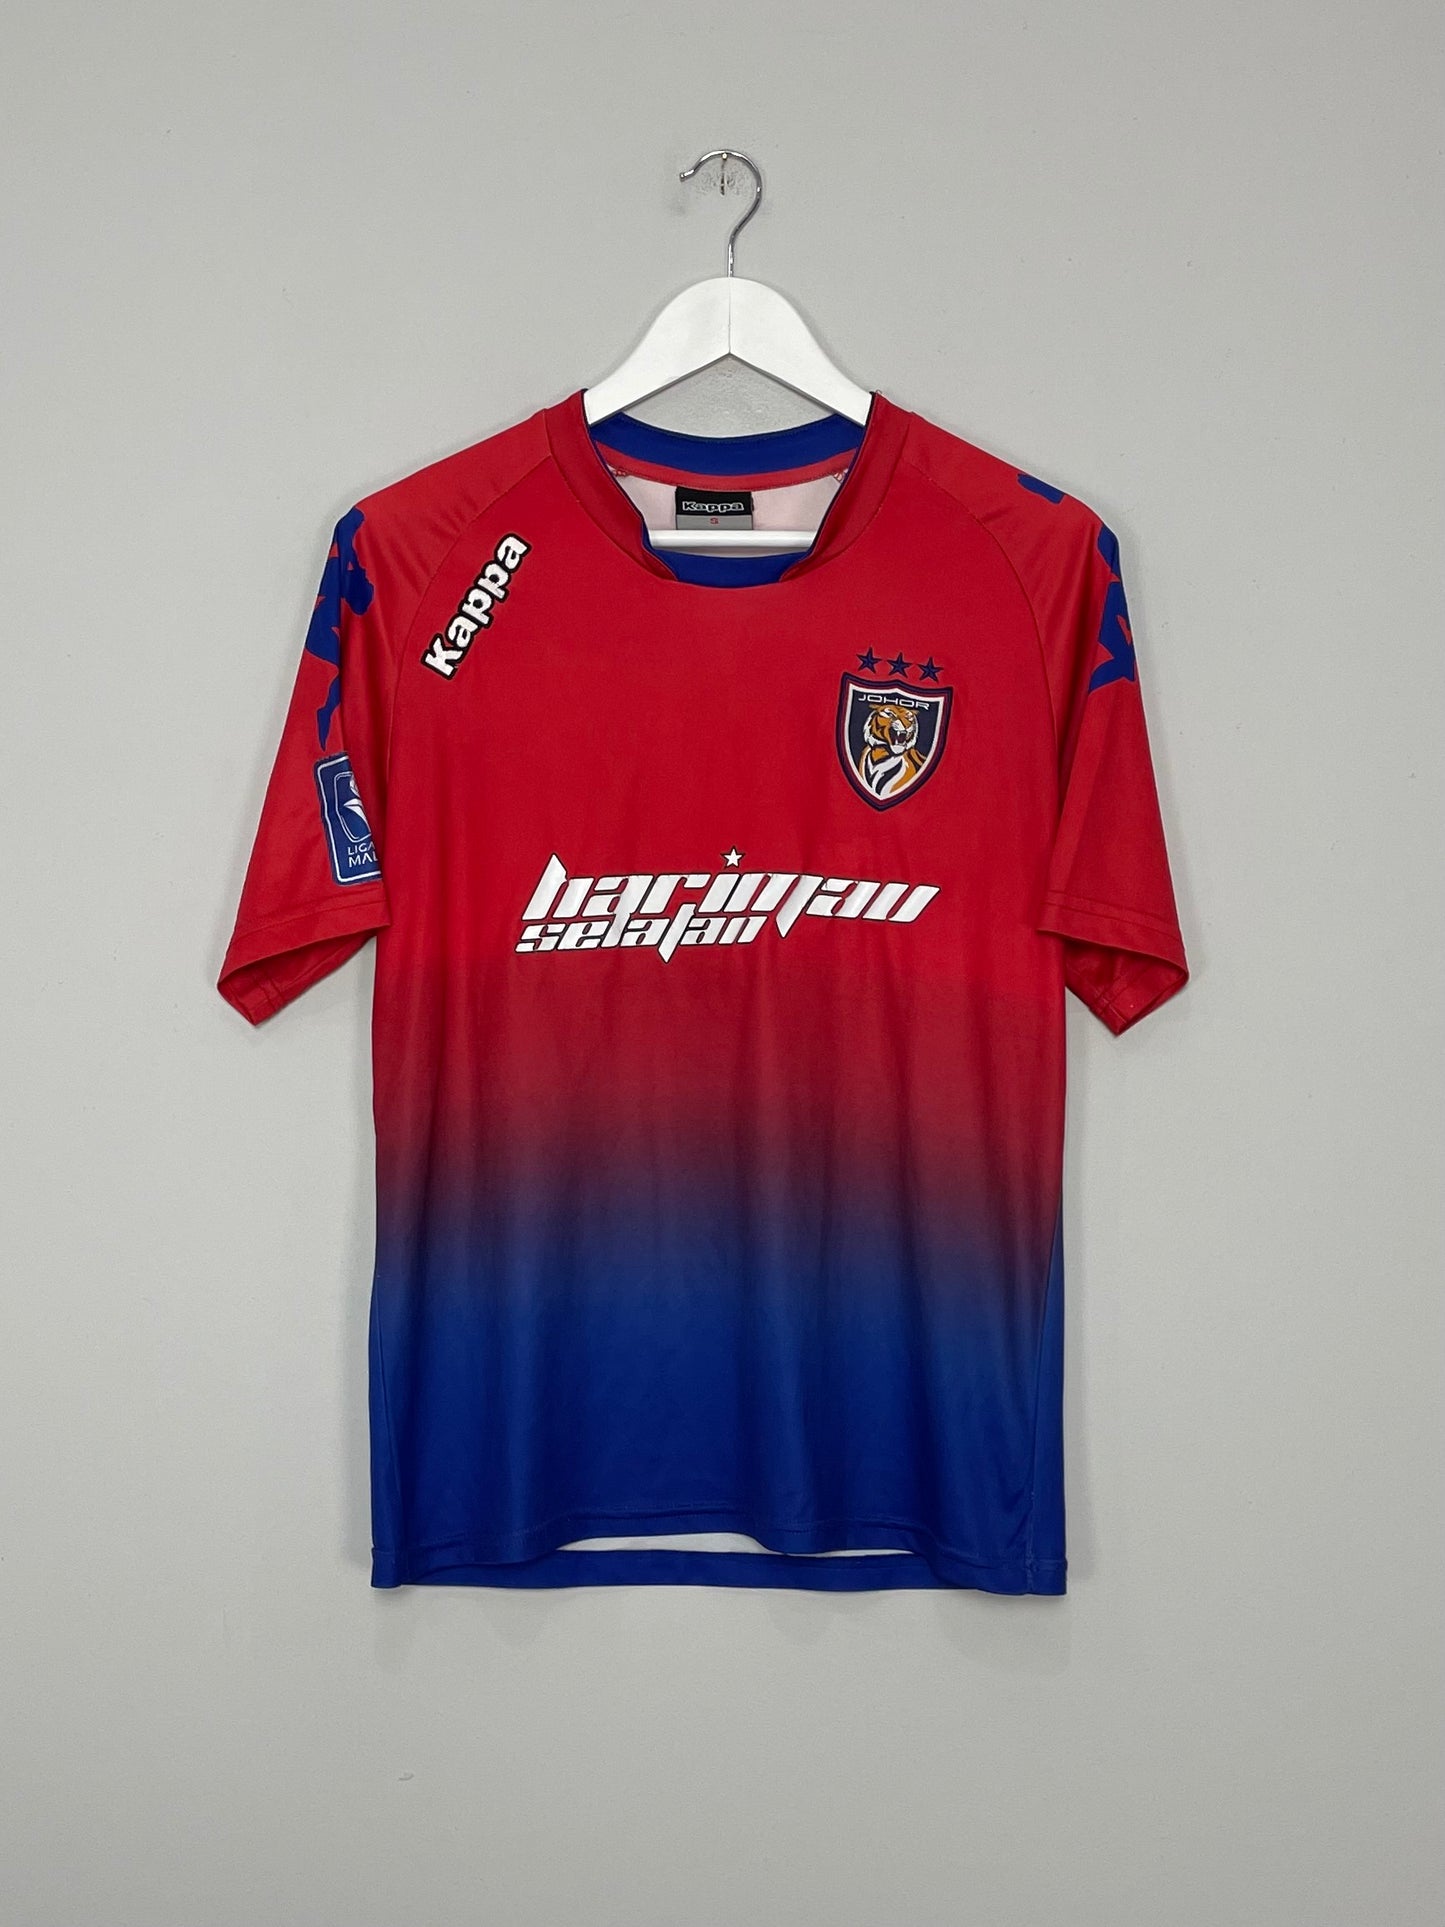 Classic Johor Football Shirt